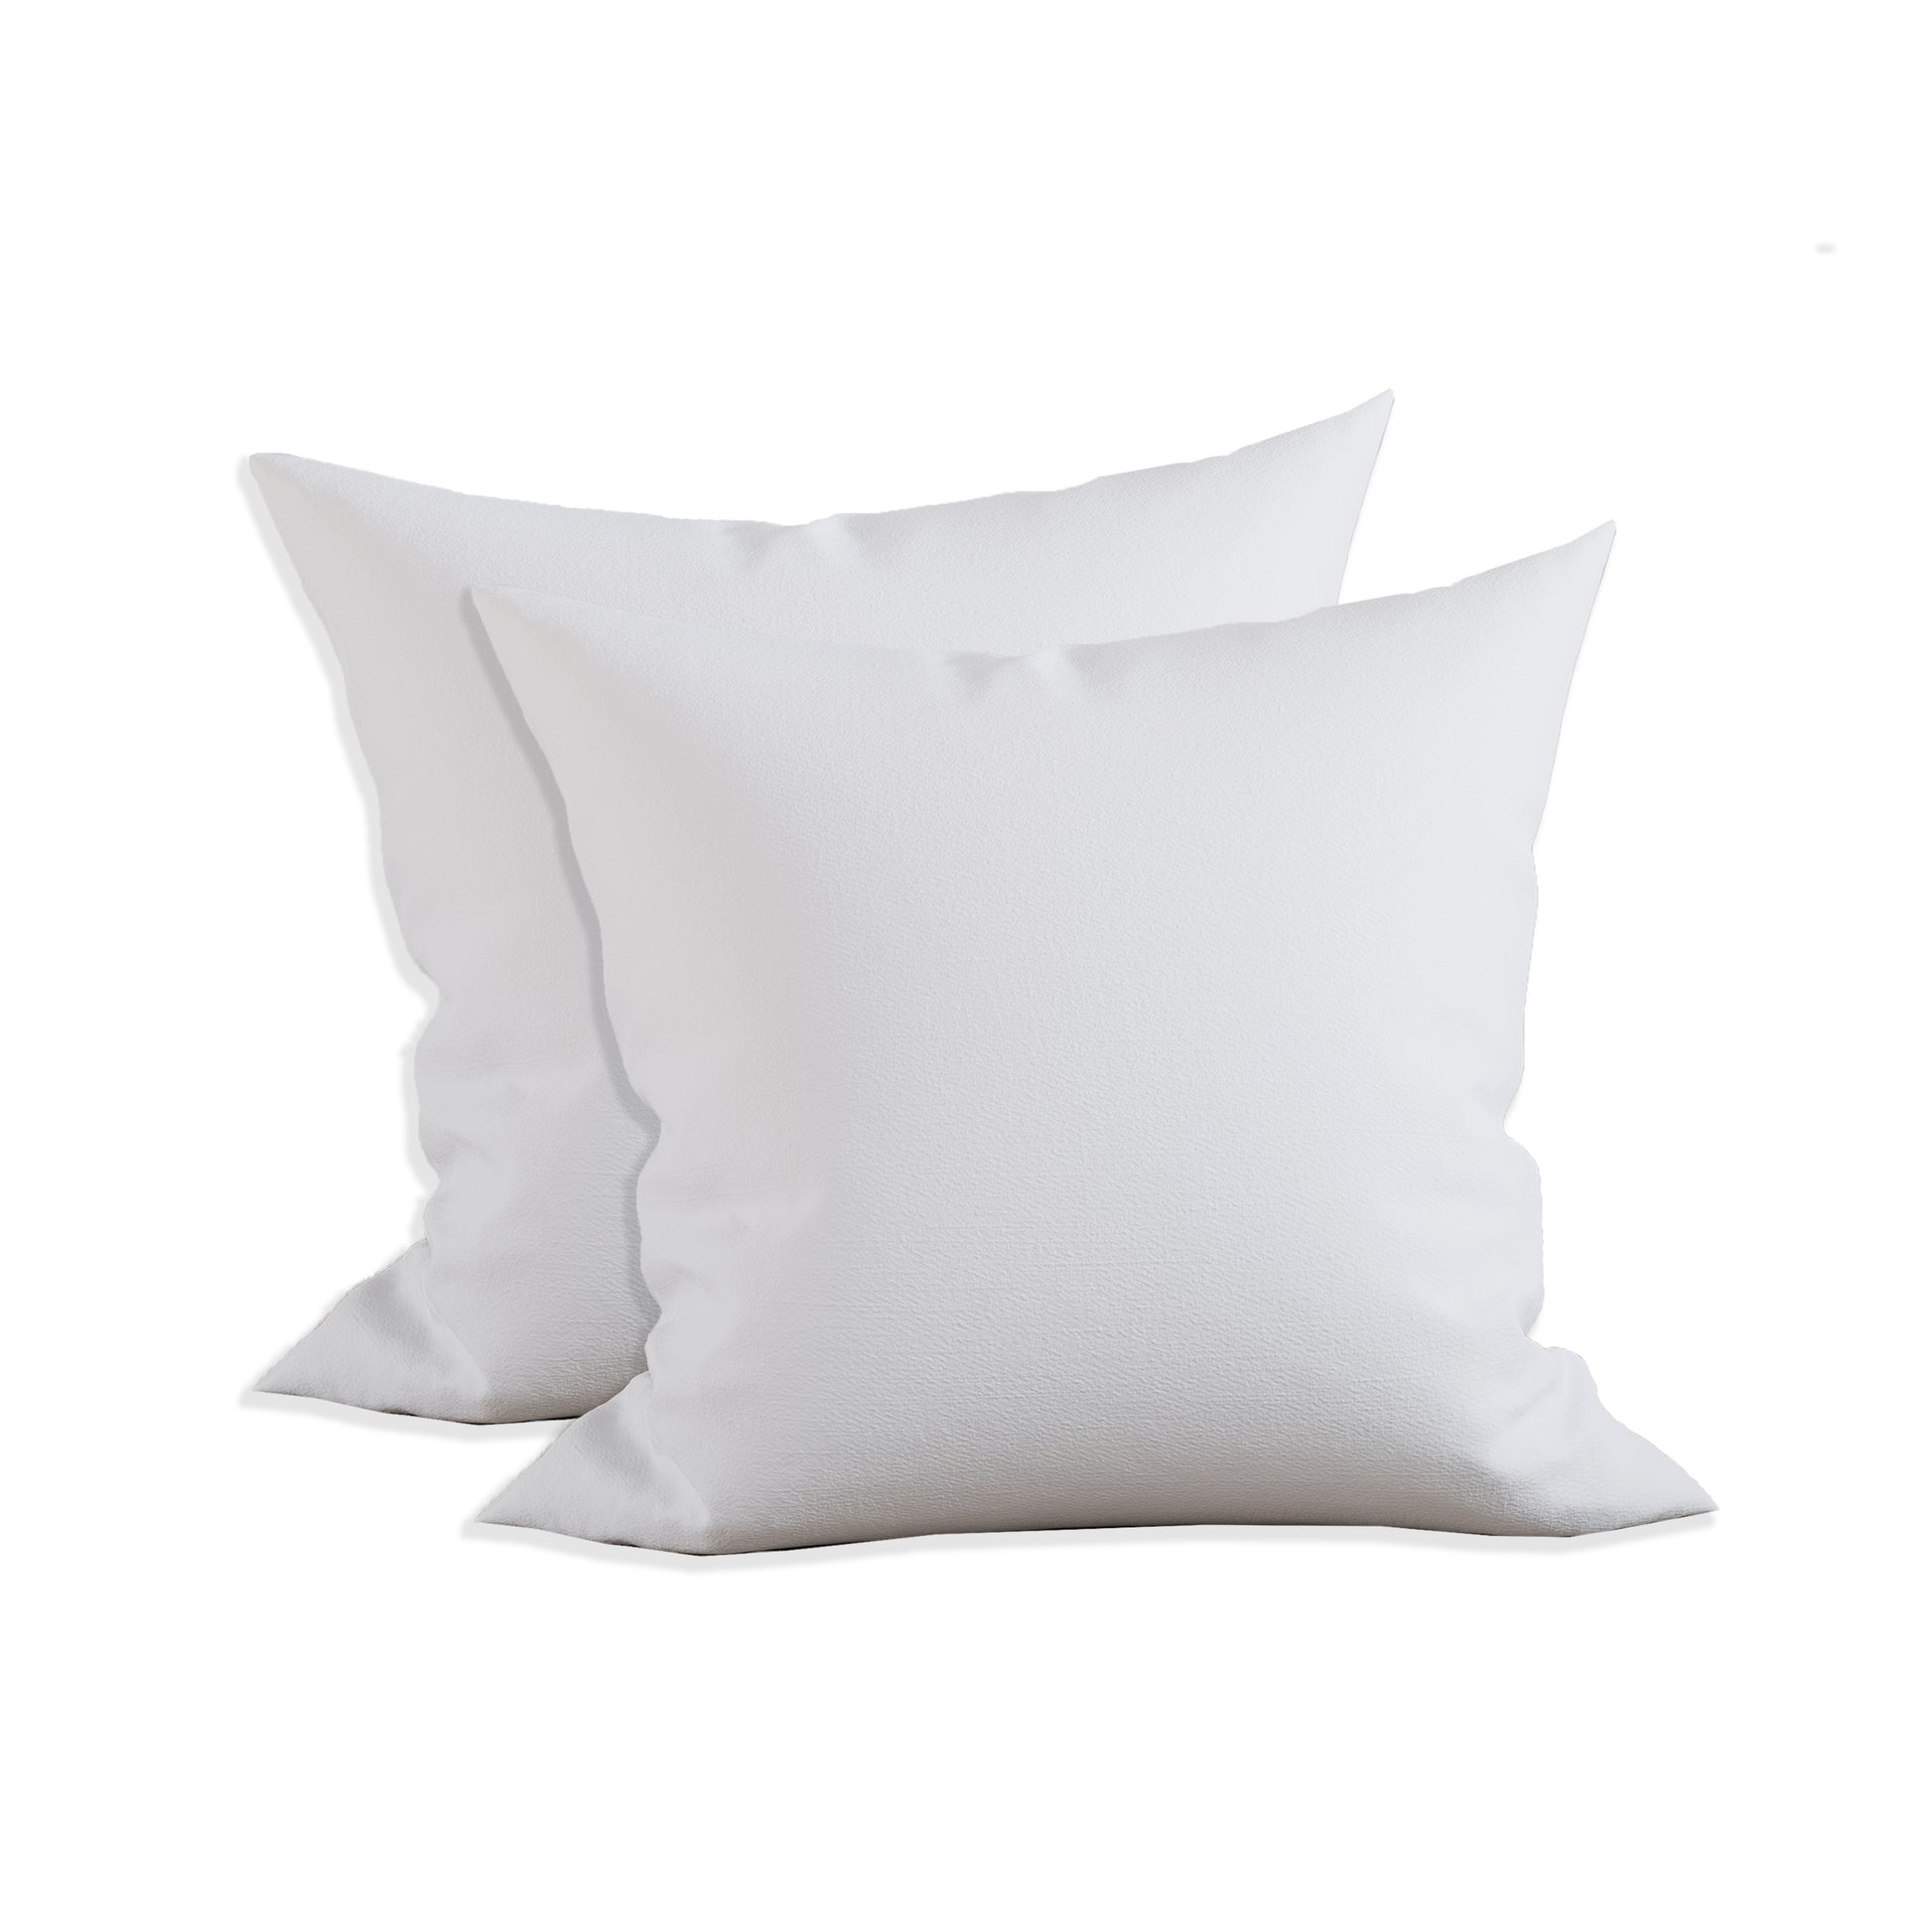 Fennco Styles 100% Polyester Fiber Pillow Filler Insert, White (Rectangular  14X23)